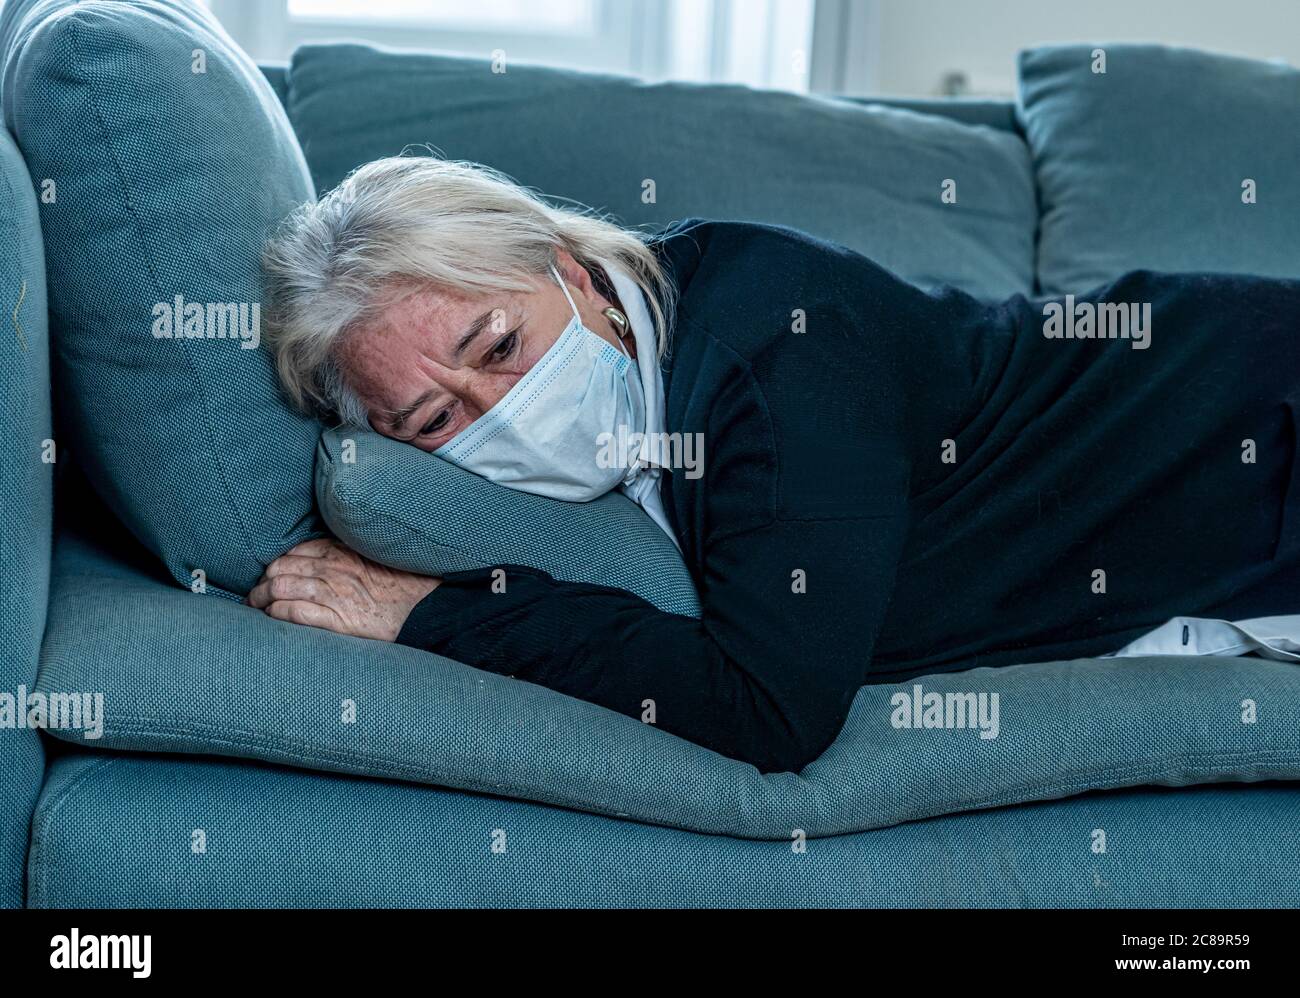 Mujer viuda solitaria deprimida con máscara protectora llorando en el sofá aislada en casa, triste y preocupada marido y familia desaparecidos en COVID-19 deat Foto de stock